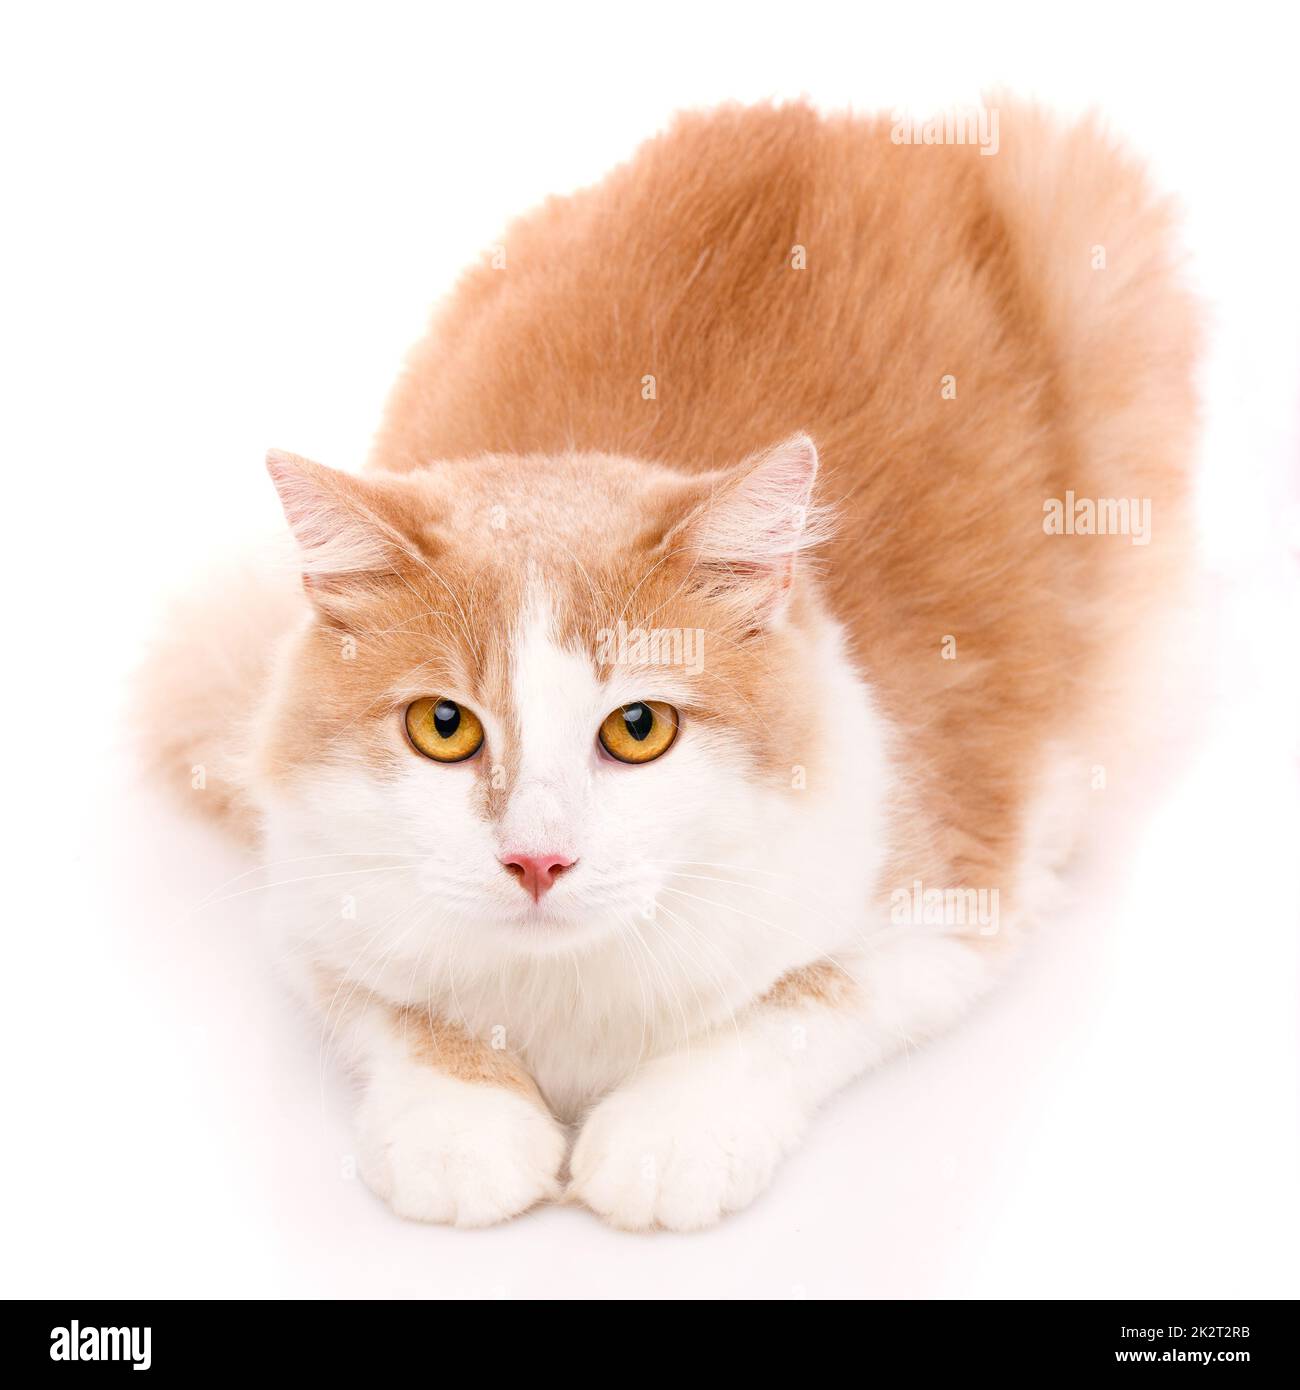 Süße junge Katze mit hellem Fell und großen gelben Augen lügt und schaut in die Kamera. Isoliert. Stockfoto